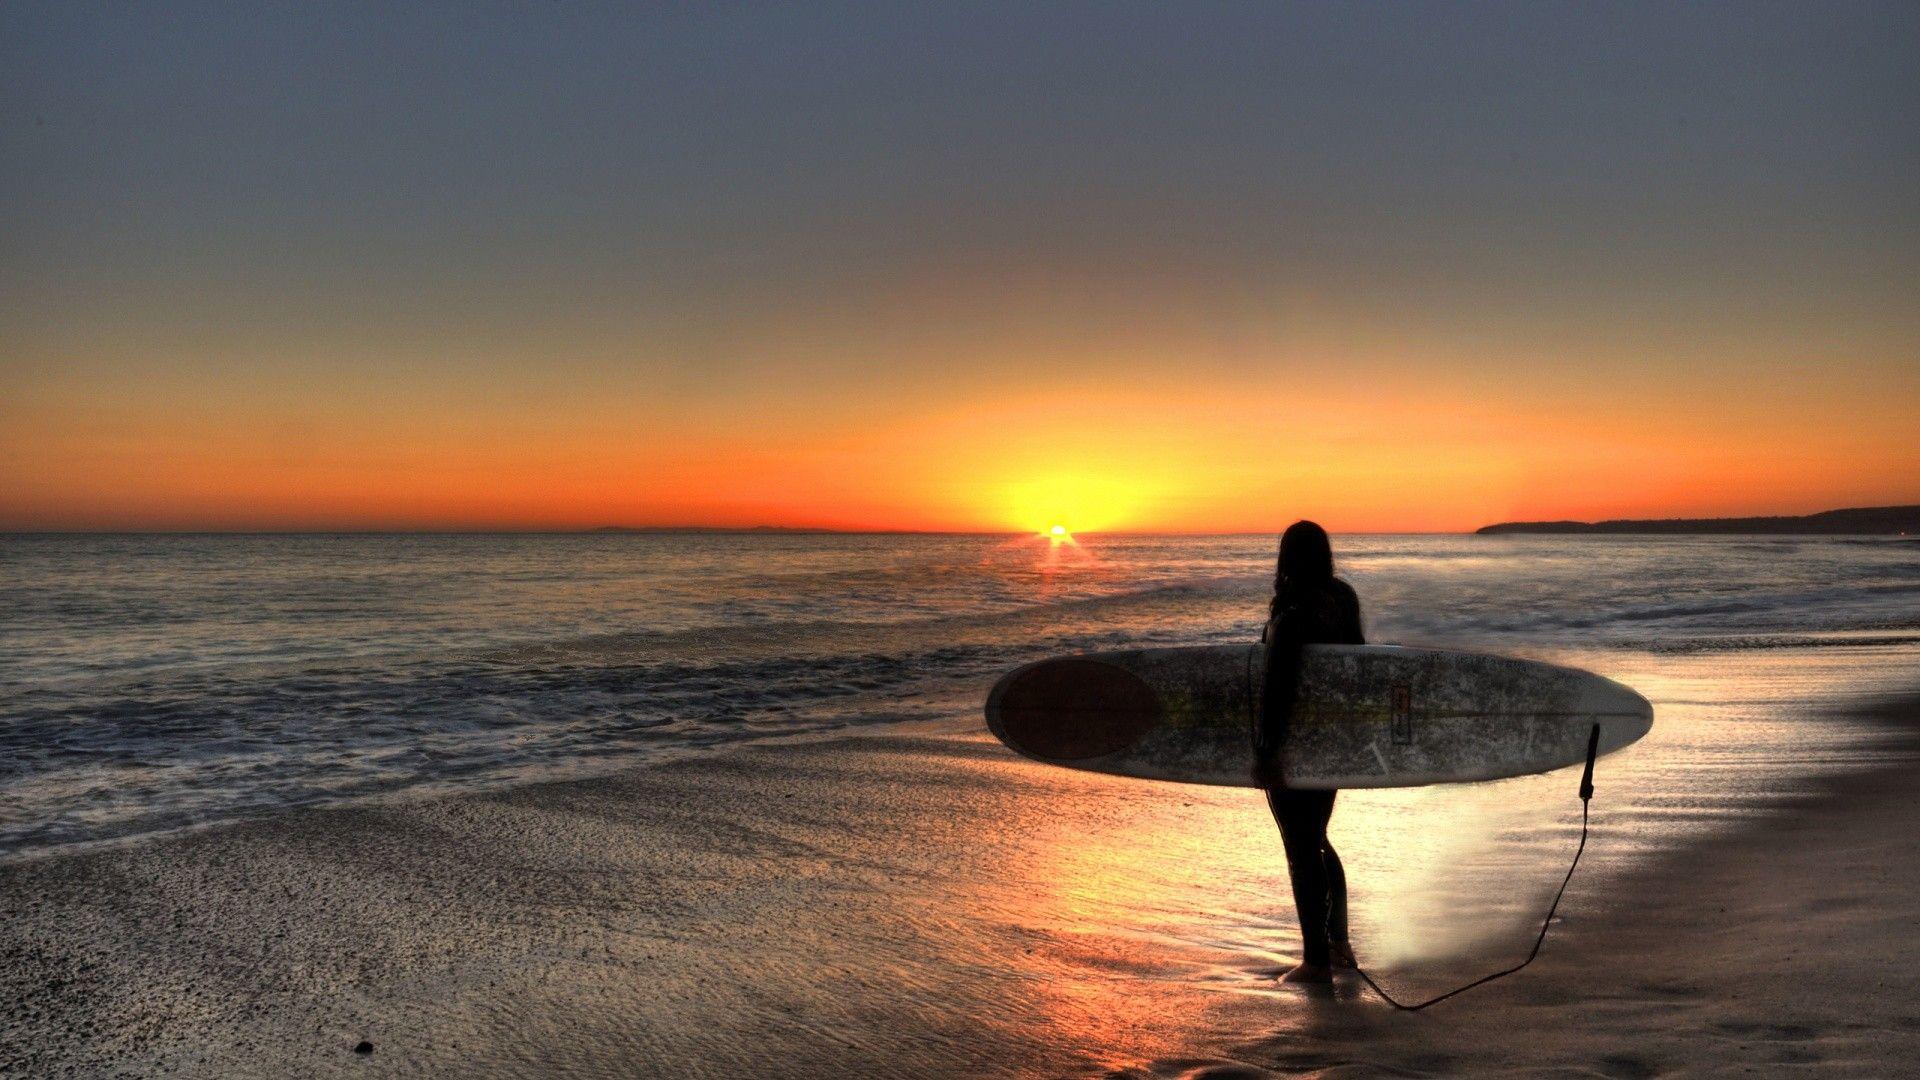 HD Surf Beach Wallpaper